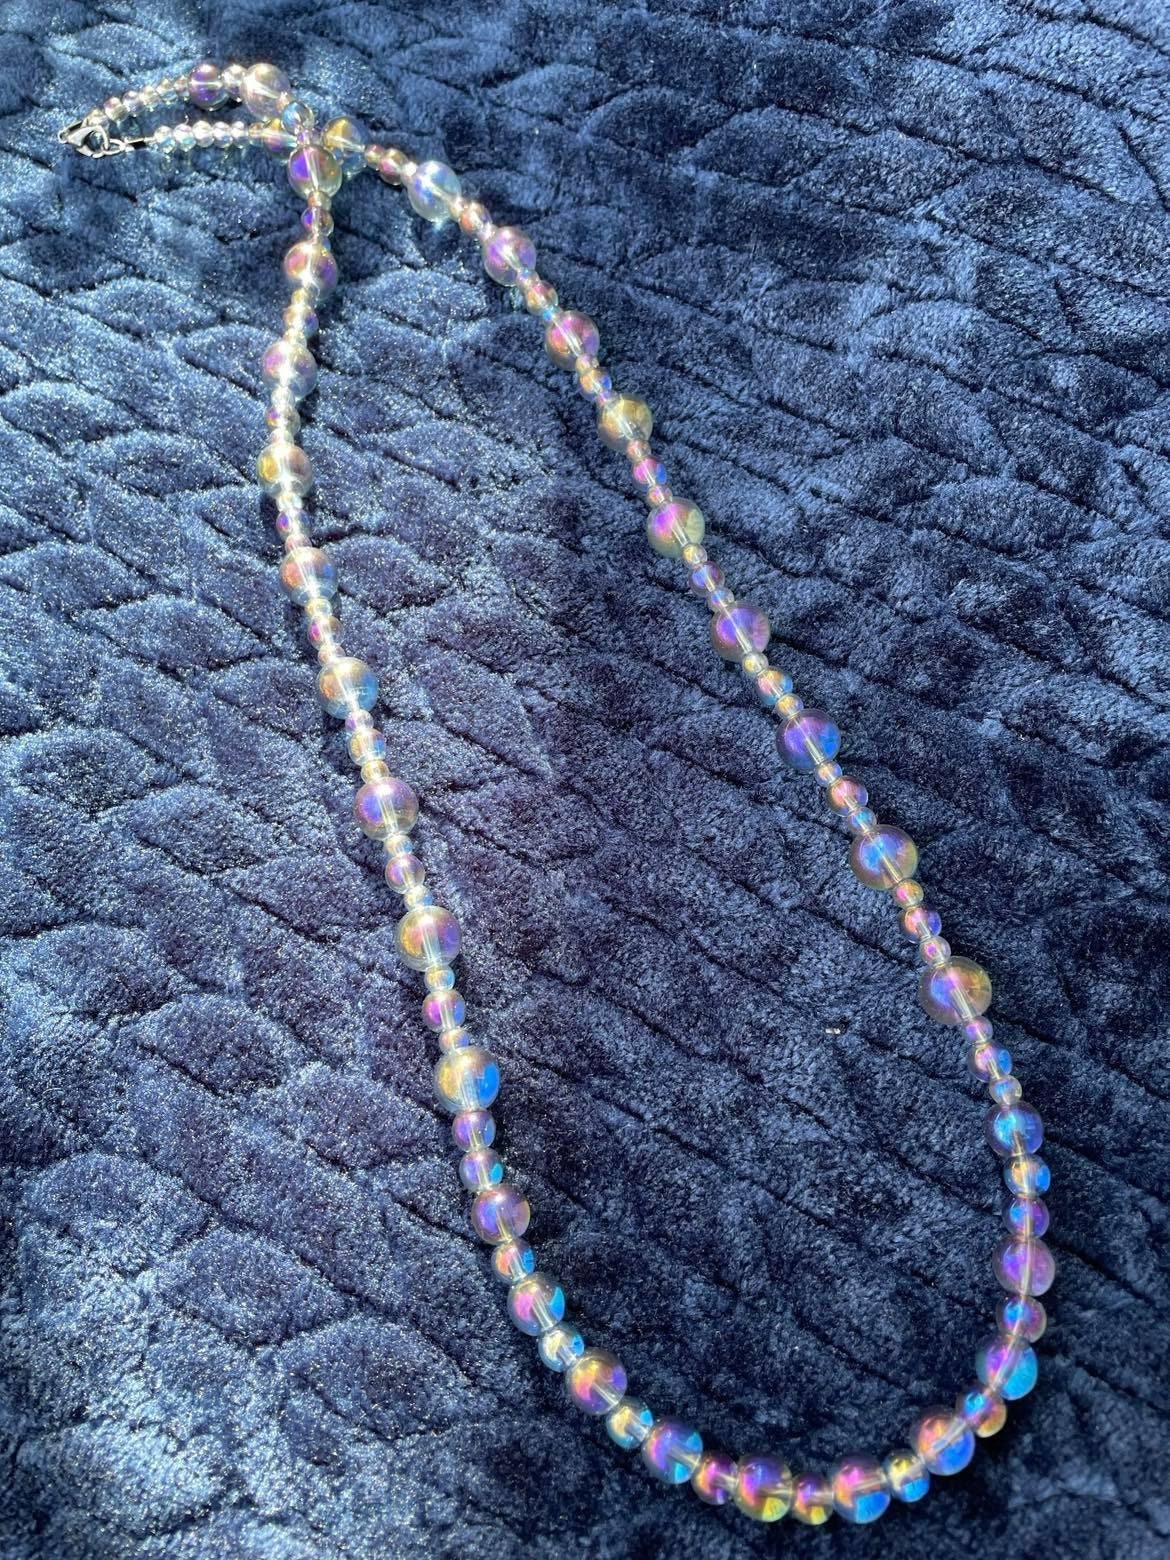 RINVEE Jewelry Making Kit for Girls 4-6 Mermaid Beads 8mm Cute Glass B –  WoodArtSupply